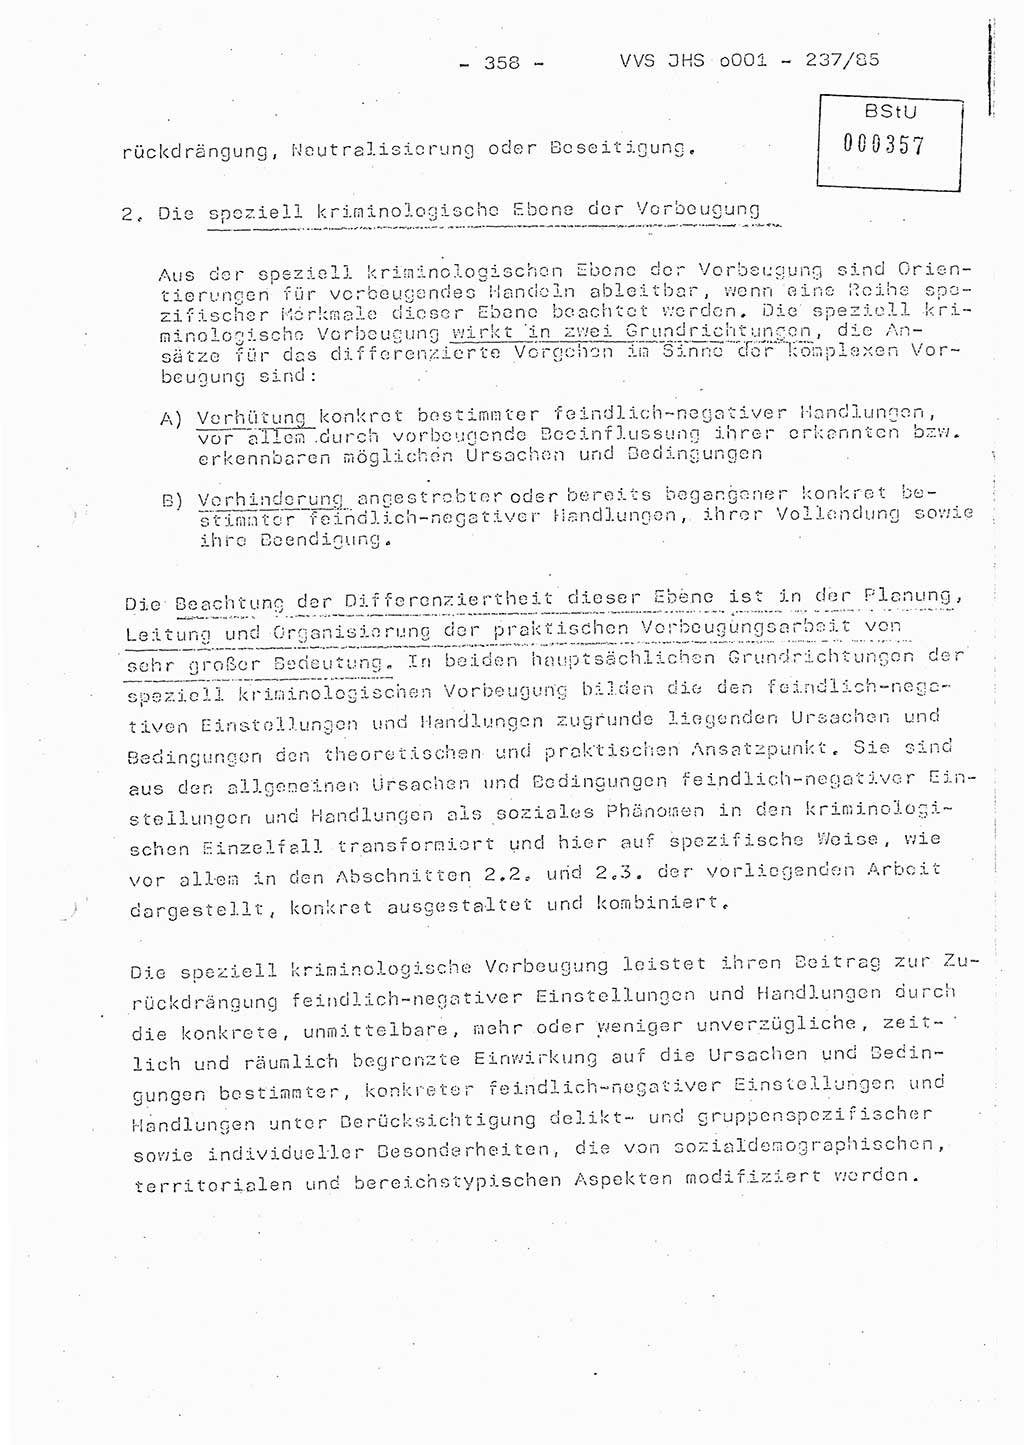 Dissertation Oberstleutnant Peter Jakulski (JHS), Oberstleutnat Christian Rudolph (HA Ⅸ), Major Horst Böttger (ZMD), Major Wolfgang Grüneberg (JHS), Major Albert Meutsch (JHS), Ministerium für Staatssicherheit (MfS) [Deutsche Demokratische Republik (DDR)], Juristische Hochschule (JHS), Vertrauliche Verschlußsache (VVS) o001-237/85, Potsdam 1985, Seite 358 (Diss. MfS DDR JHS VVS o001-237/85 1985, S. 358)